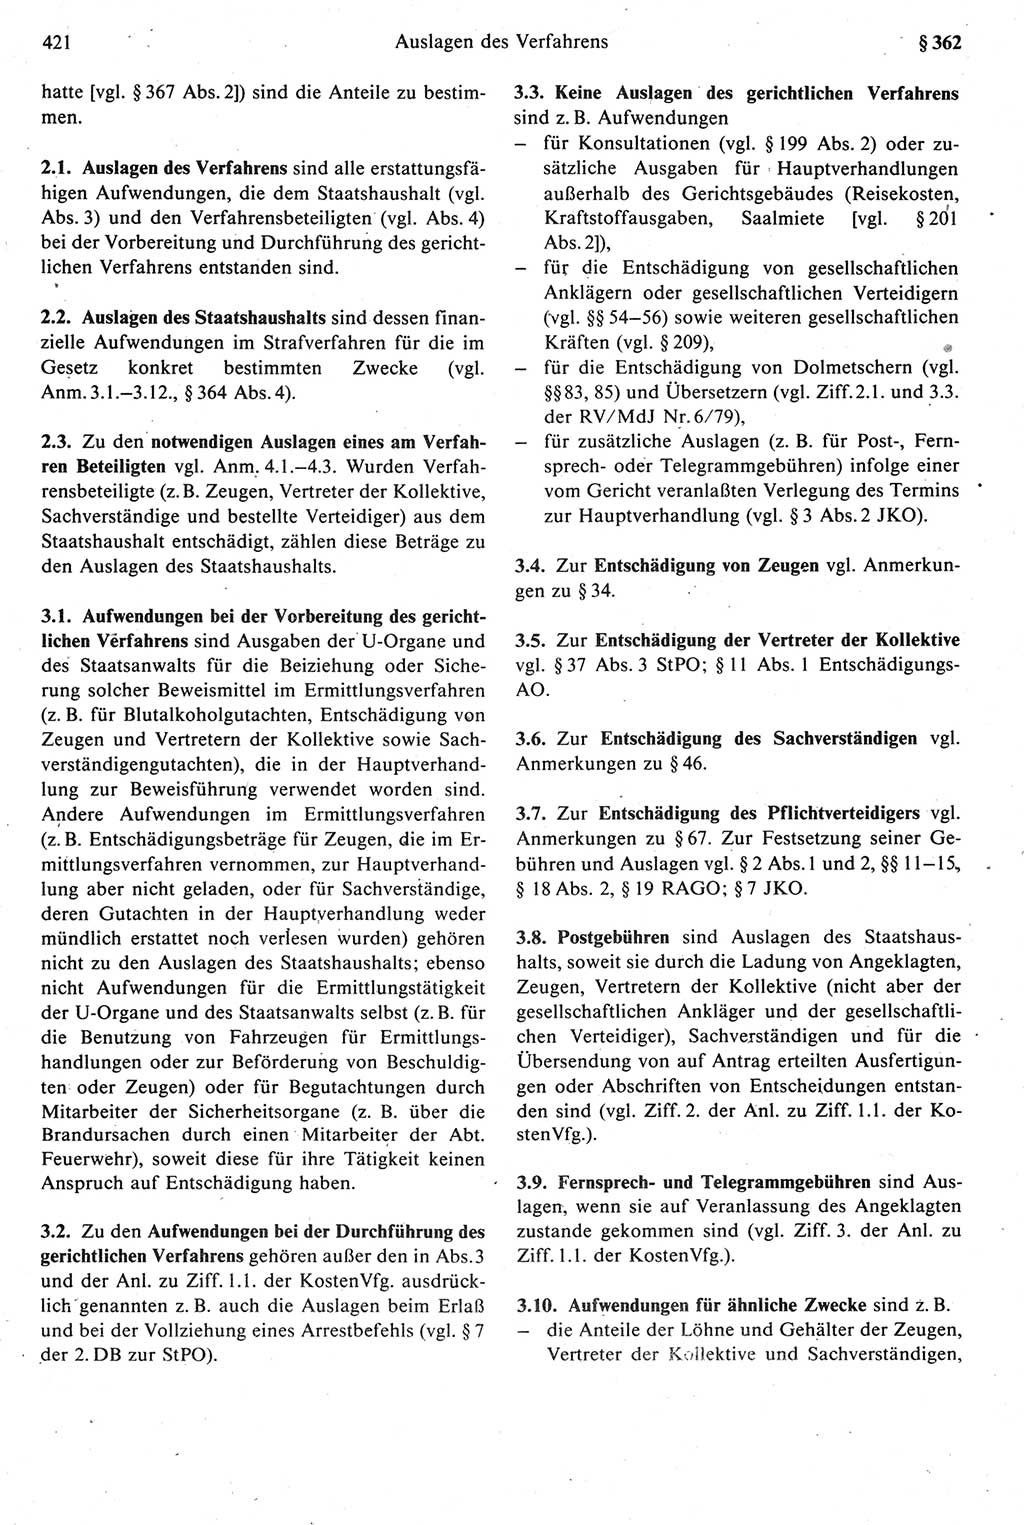 Strafprozeßrecht der DDR [Deutsche Demokratische Republik], Kommentar zur Strafprozeßordnung (StPO) 1987, Seite 421 (Strafprozeßr. DDR Komm. StPO 1987, S. 421)